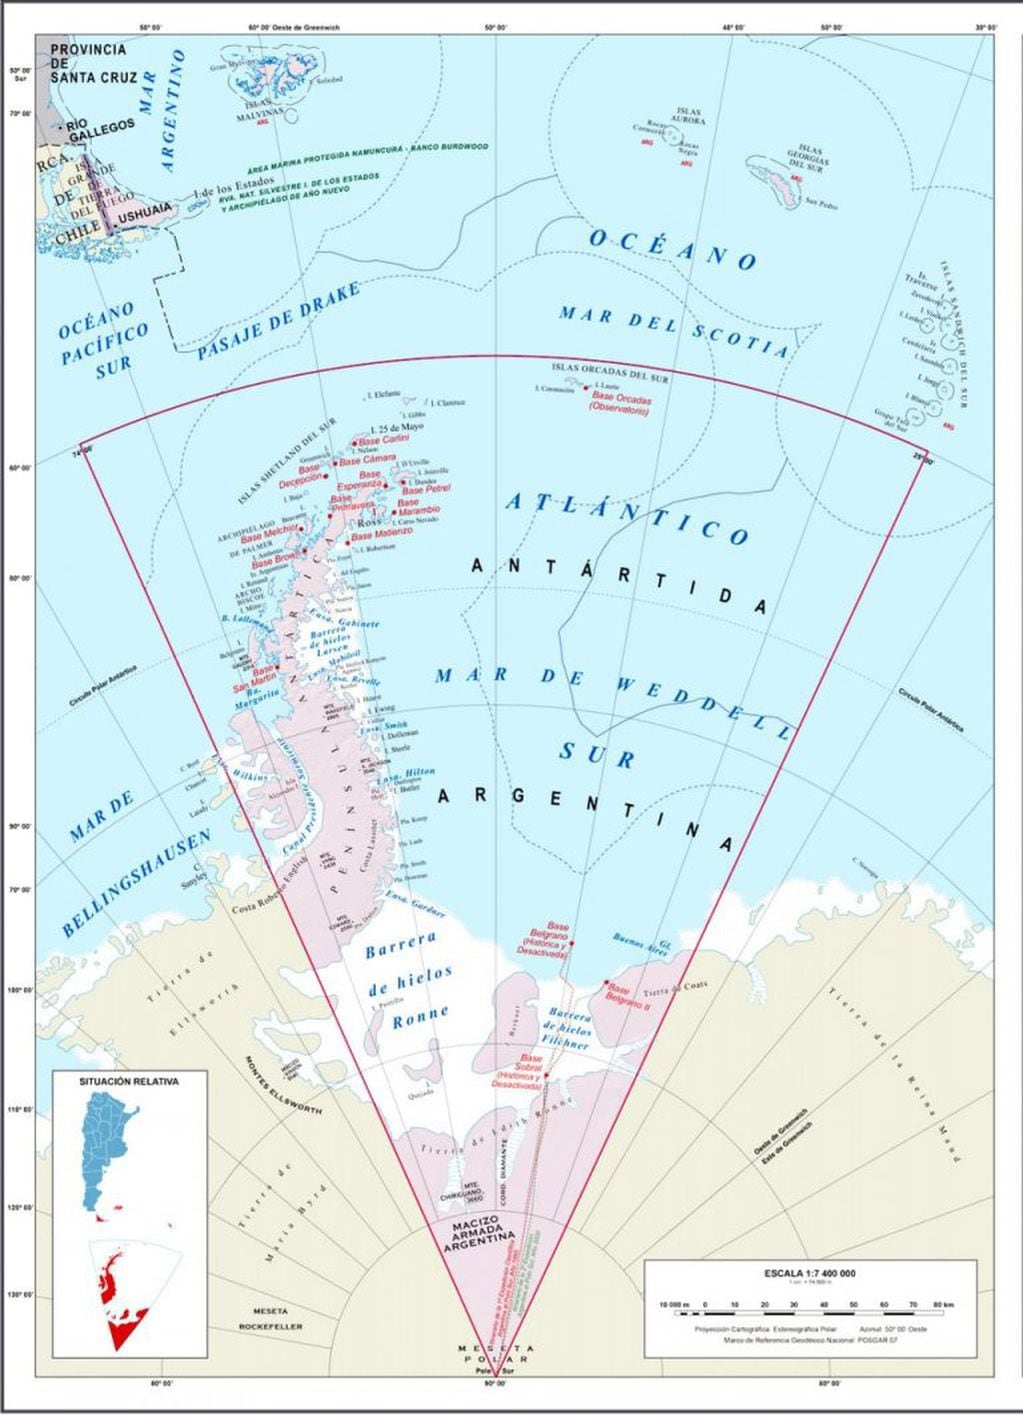 Mapa completo de la provincia bicontinental de Tierra del Fuego. Antártida, Malvinas e Islas del Atlántico sur.